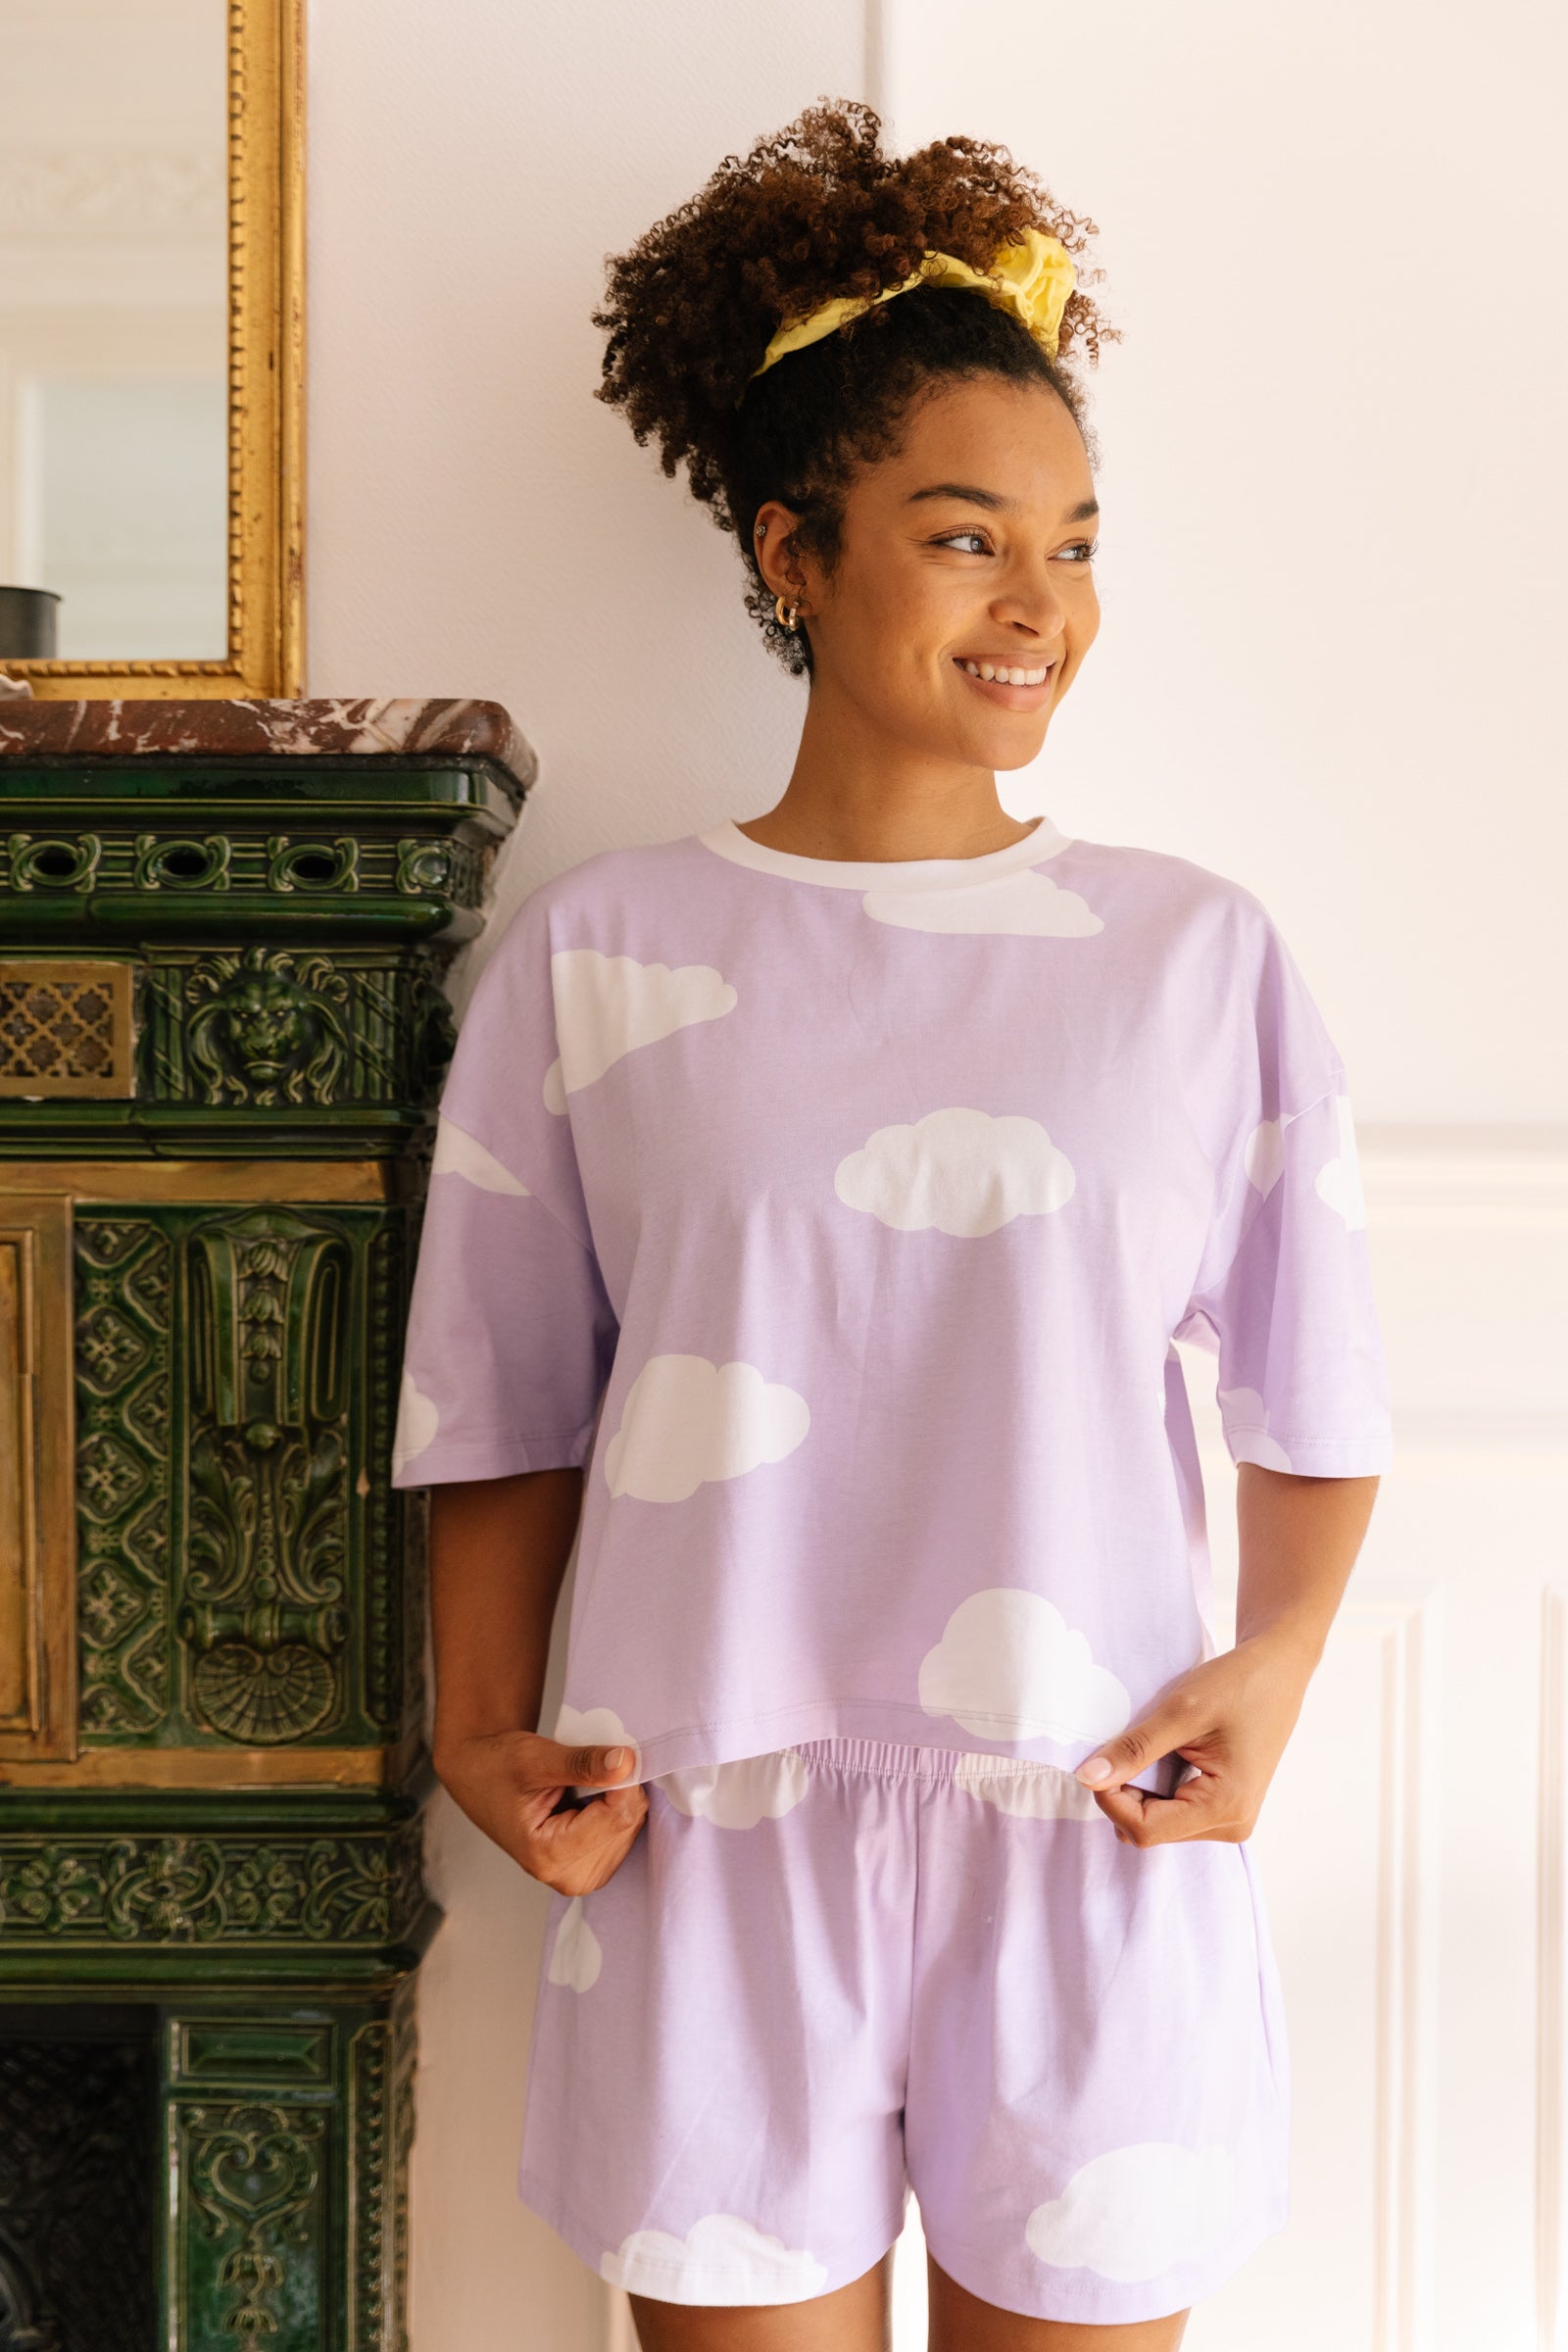 Pyjama coton BIO - Nuage Violet - Pyjamas - We Are Jolies